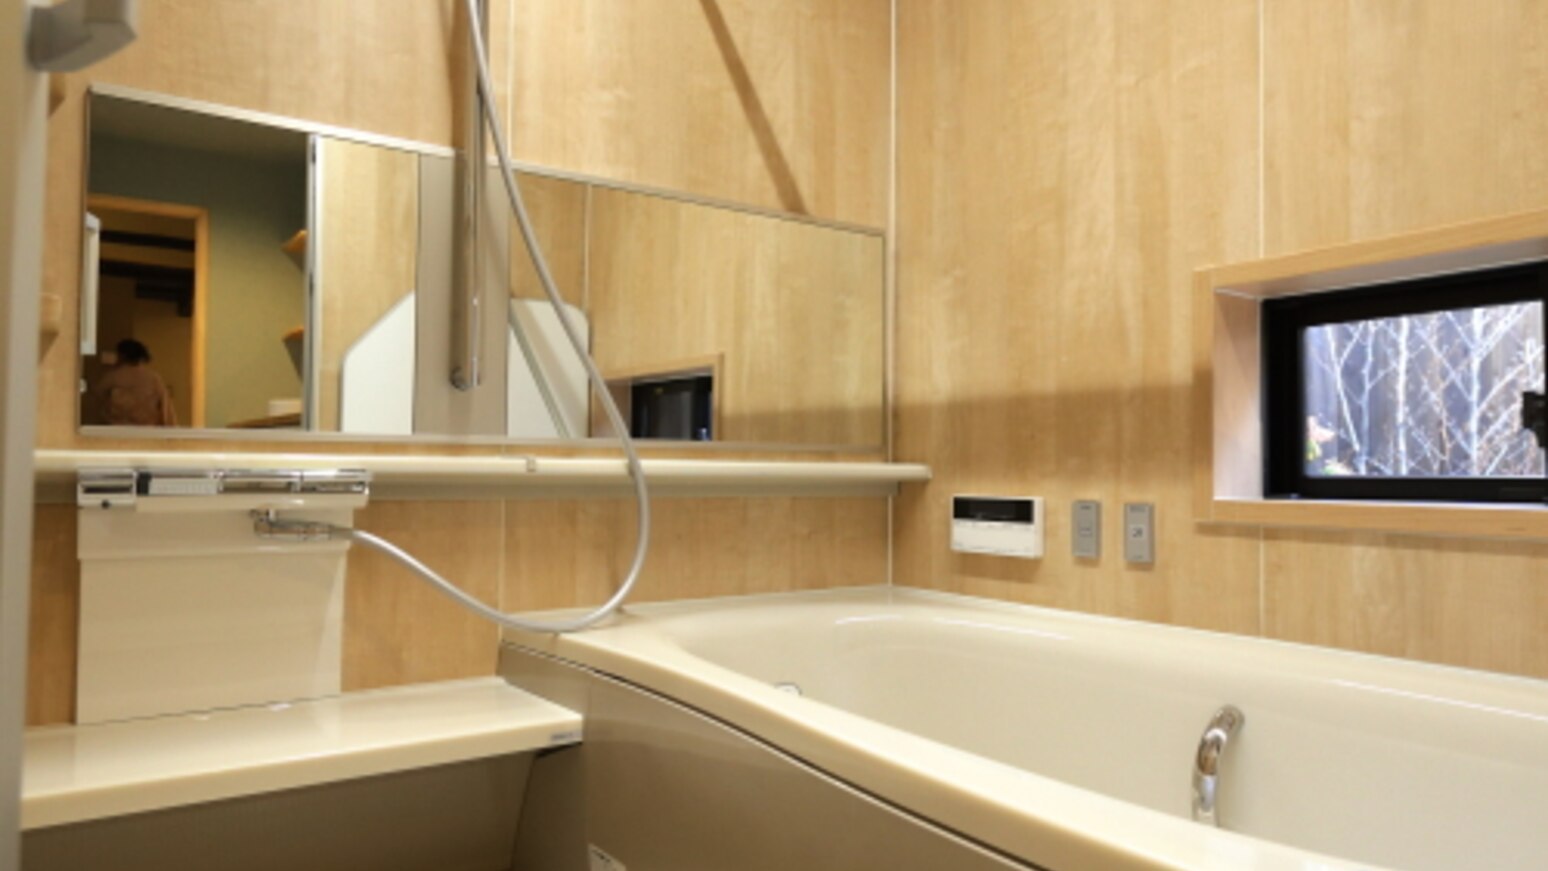 1階バスルーム近代最新バスルームです使い勝手重視です。